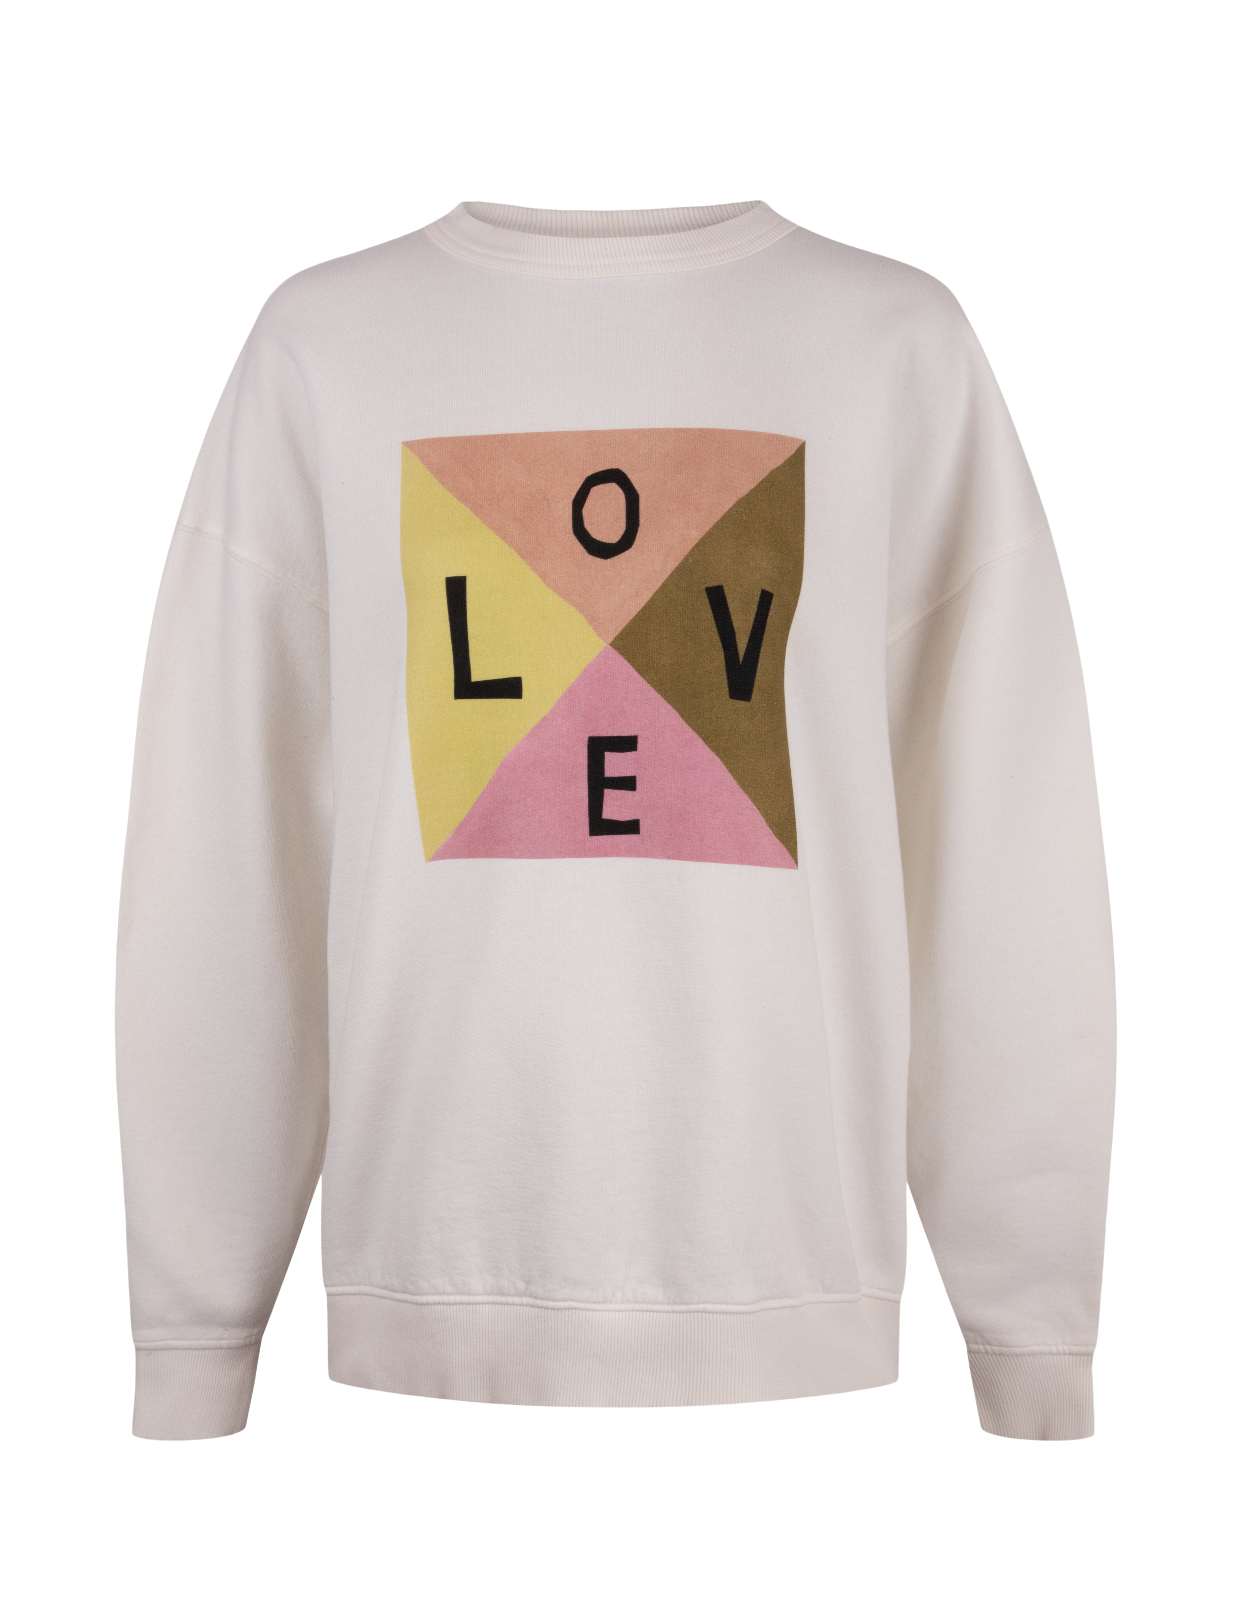 Iwa Love Sweatshirt Offwhite Stl S